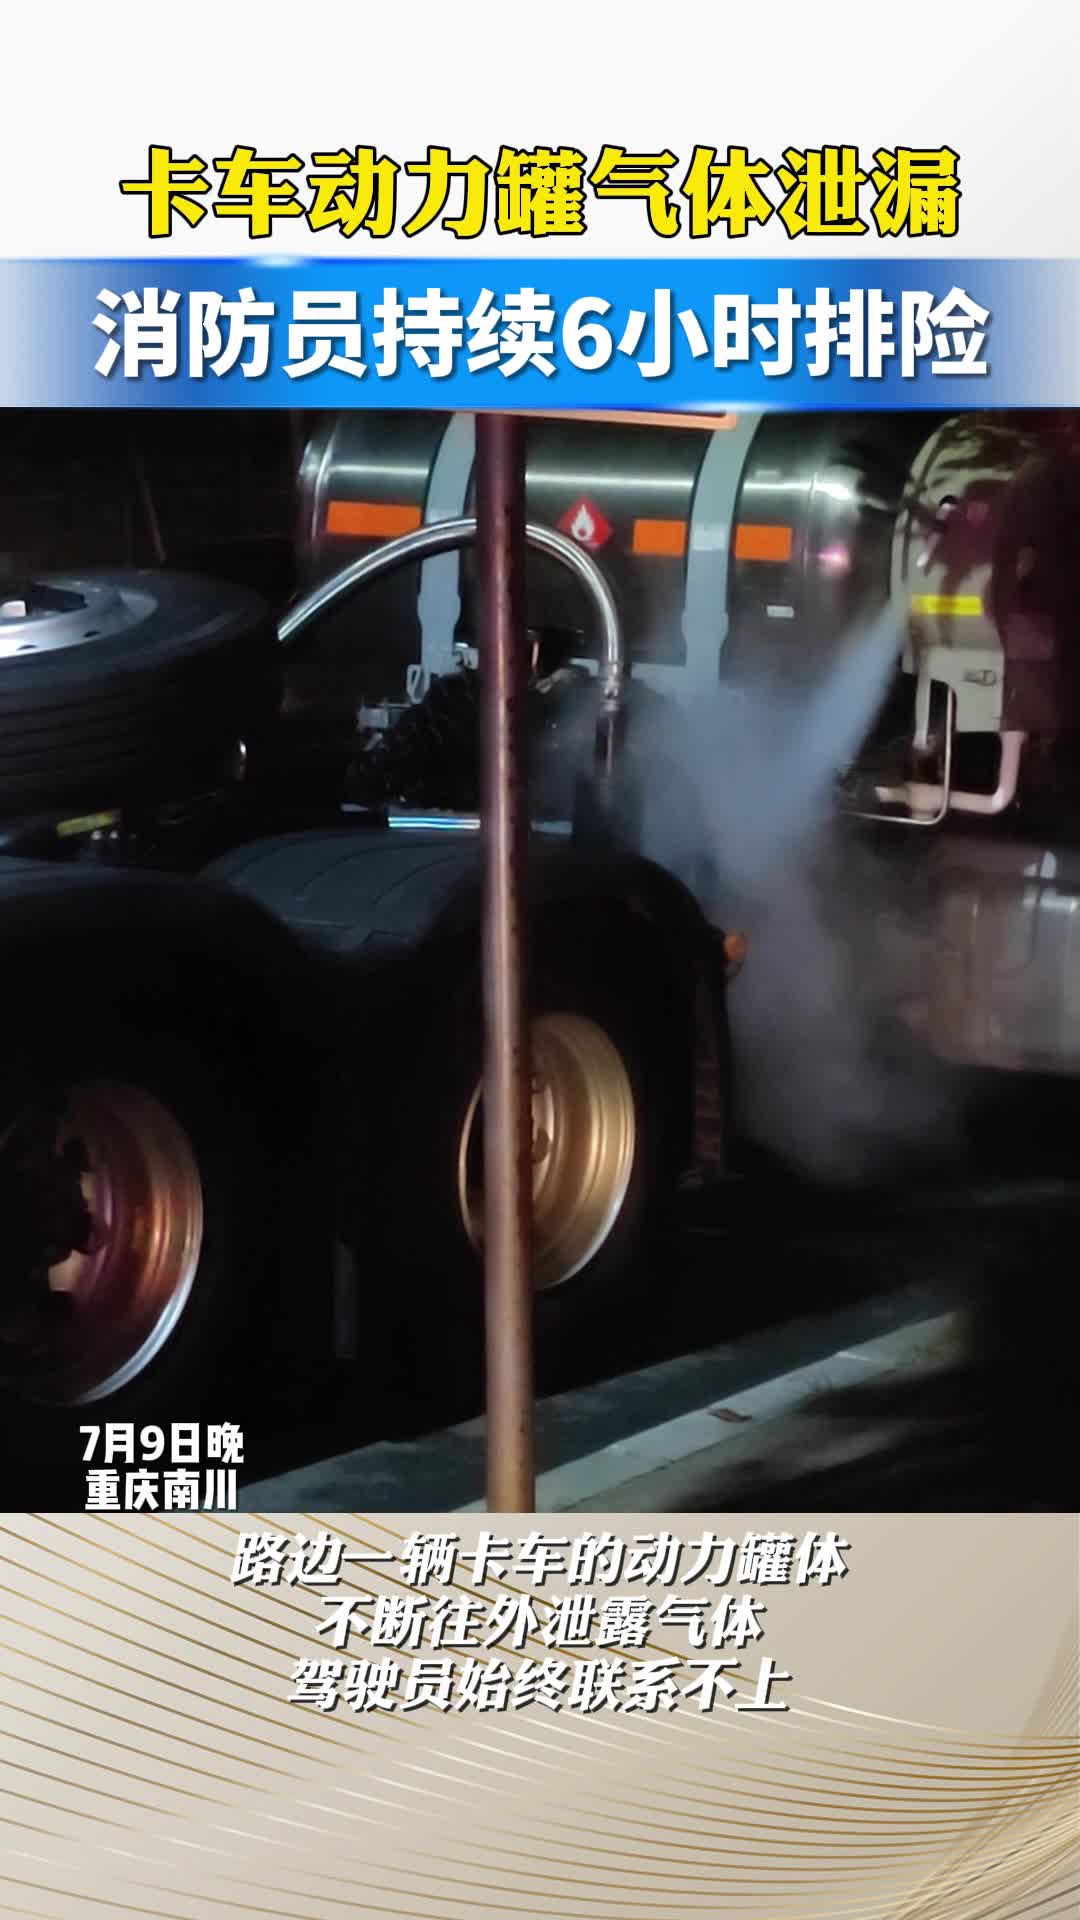 卡车动力罐气体泄漏，消防员持续6小时排险